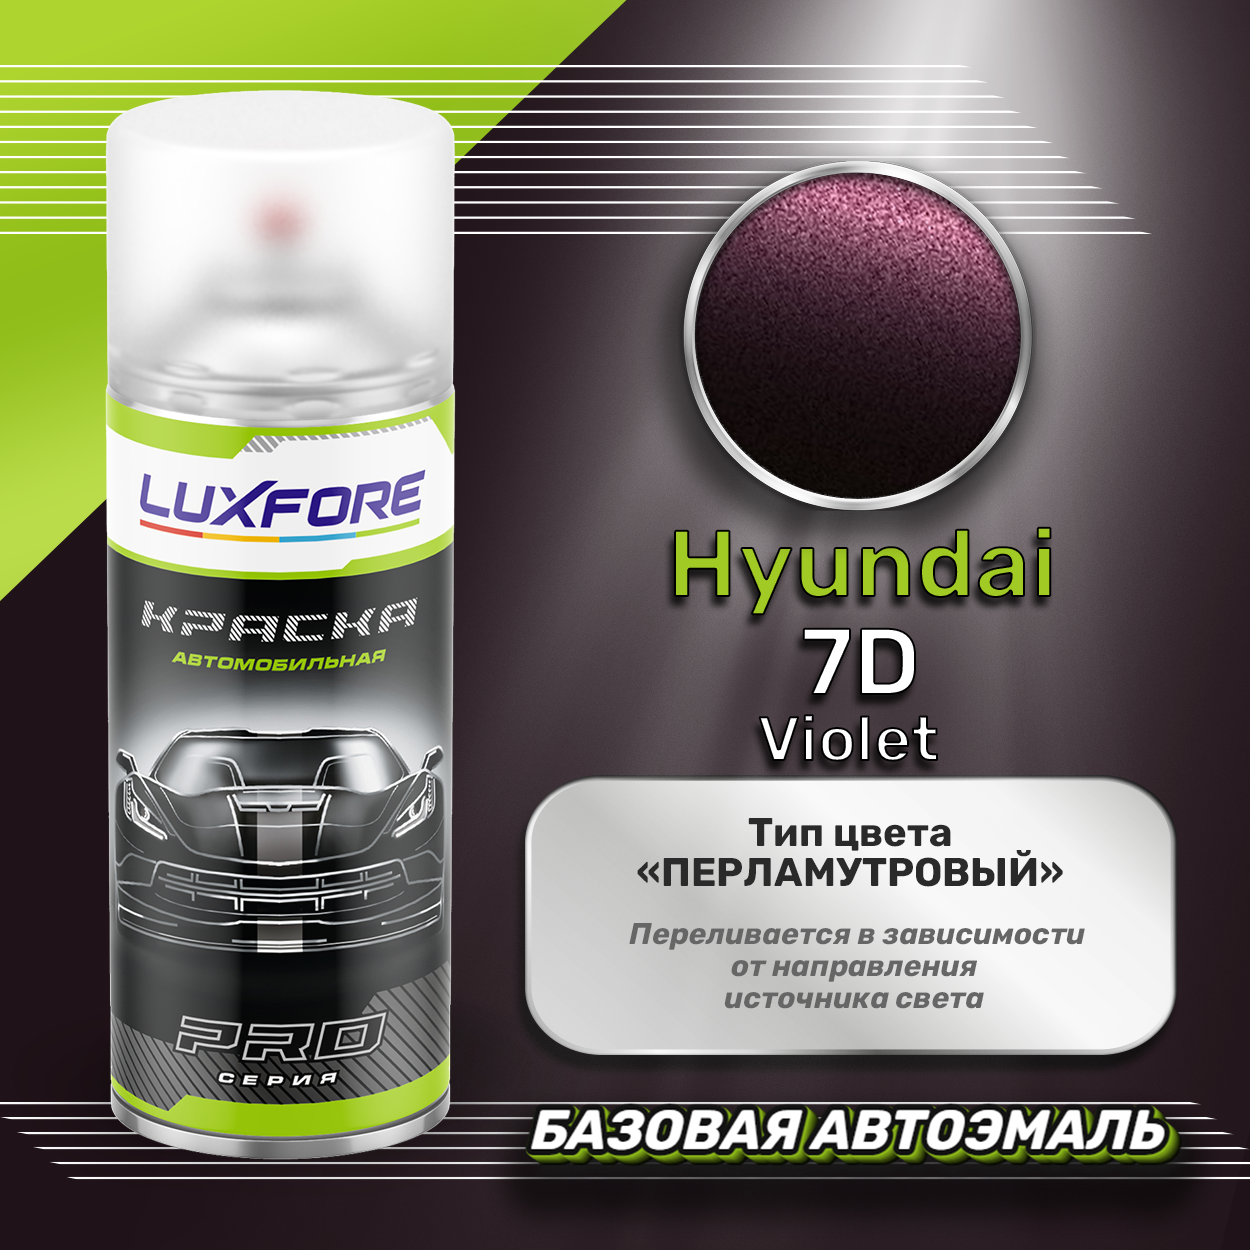 Luxfore аэрозольная краска Hyundai 7D Violet 400 мл